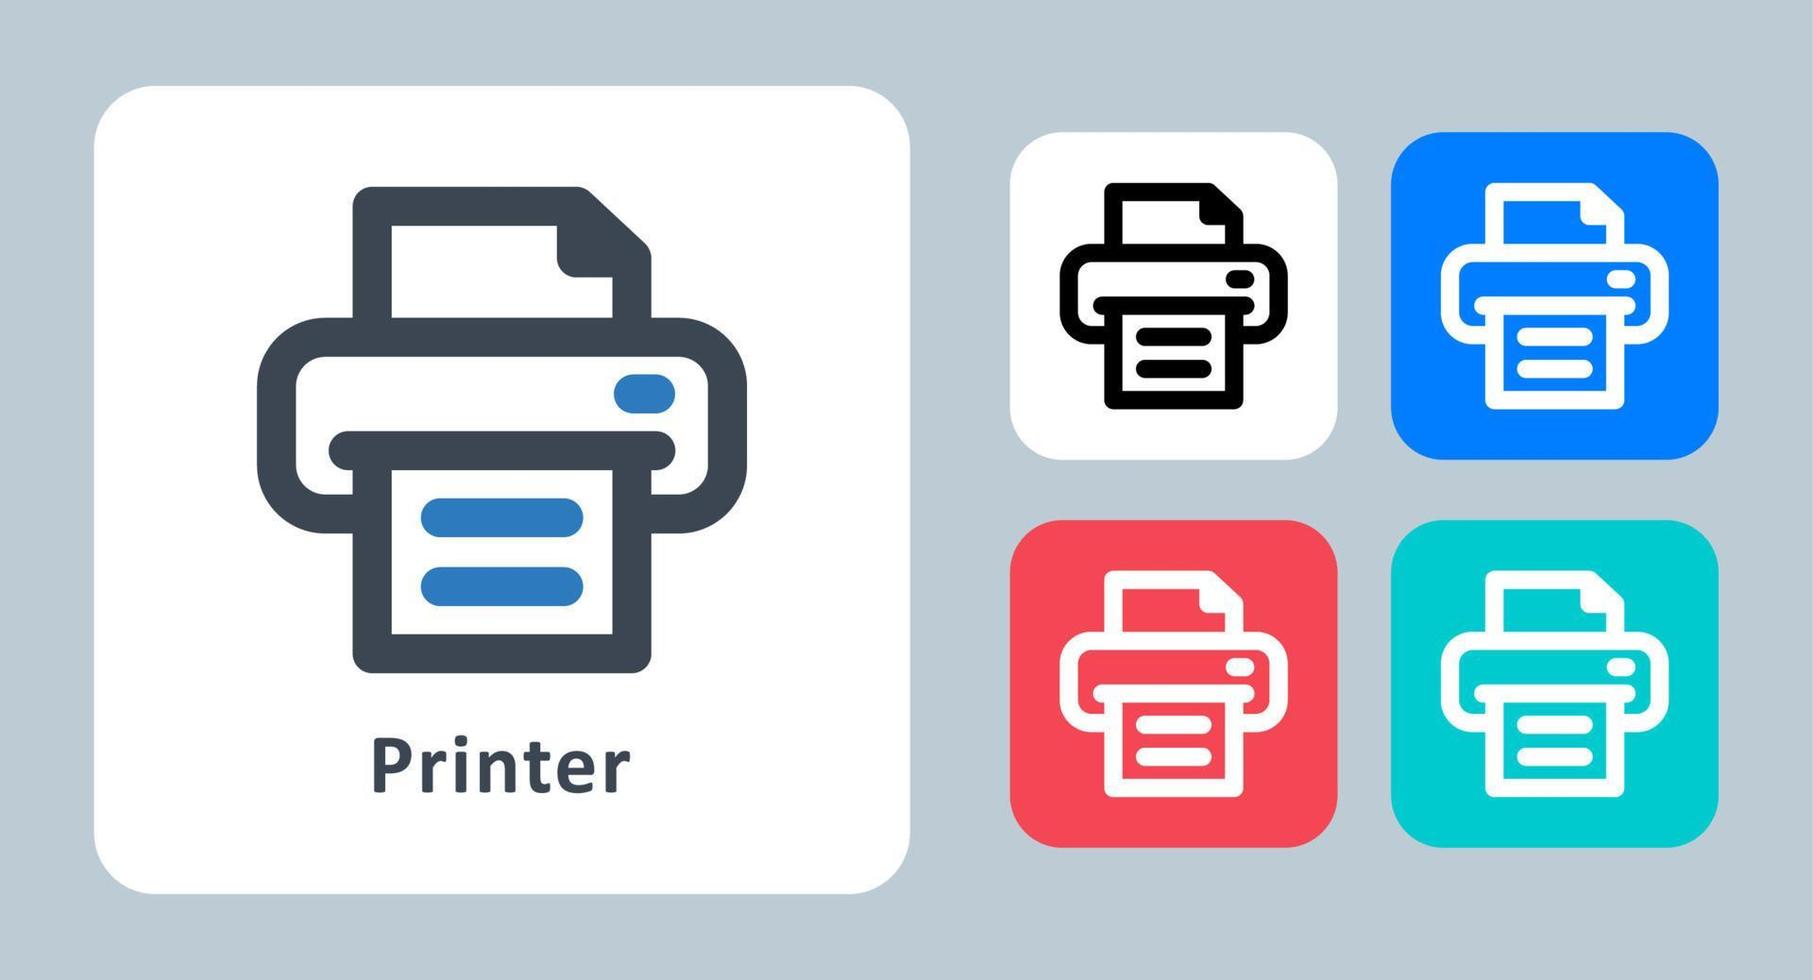 icône de l'imprimante - illustration vectorielle. imprimante, impression, impression, bureau, document, fax, papier, ligne, contour, plat, icônes. vecteur